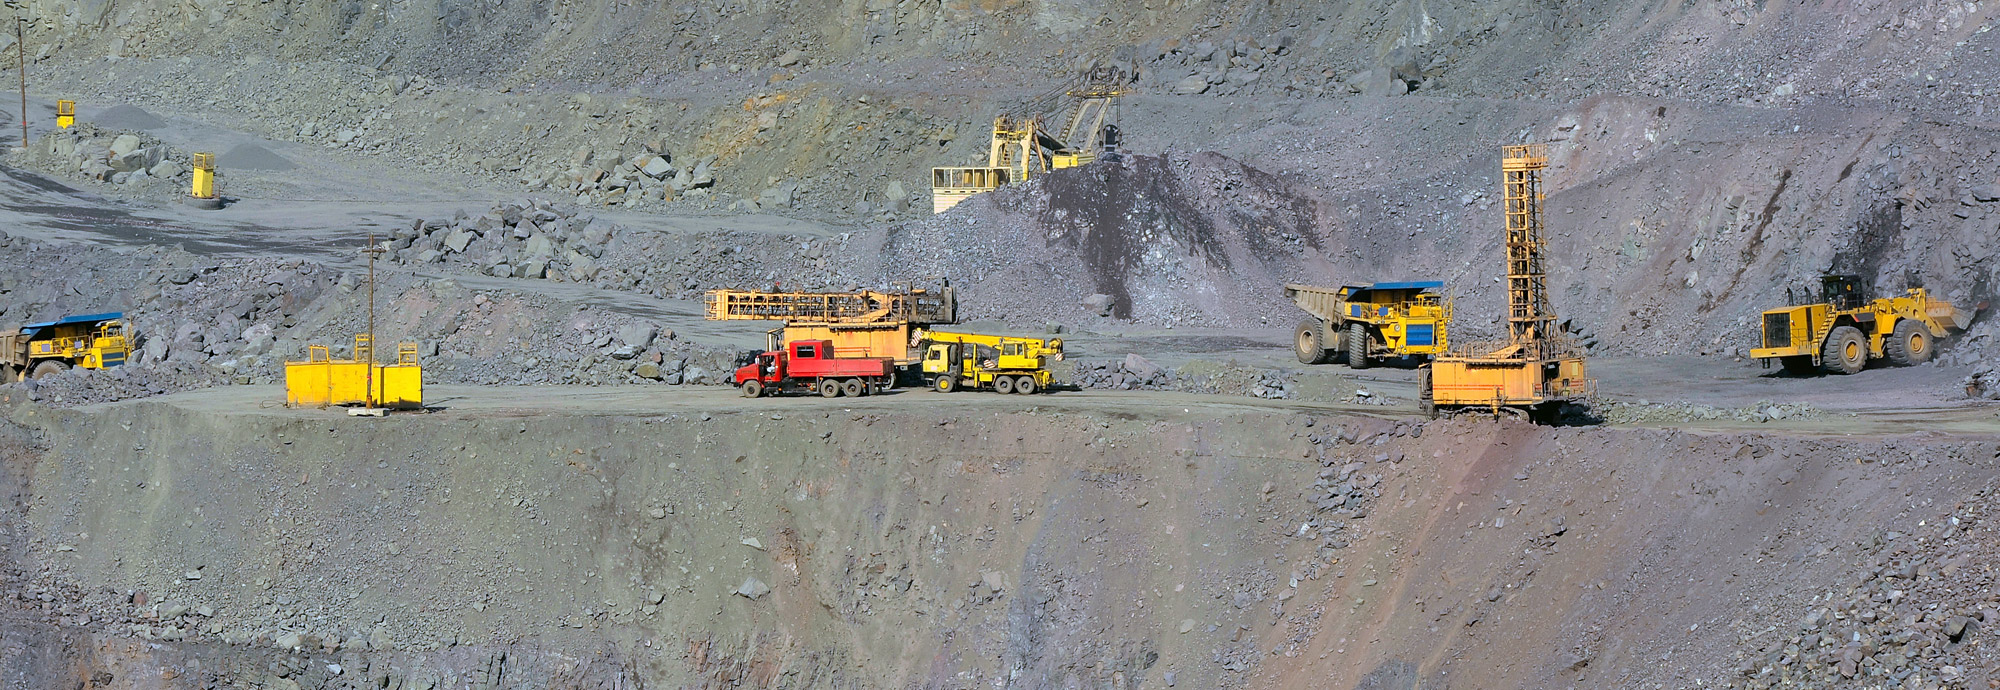 Taşocakları, maden ocakları ve açık ocak madenciliği için Modüler Lokal Konumlandırma Sistemi